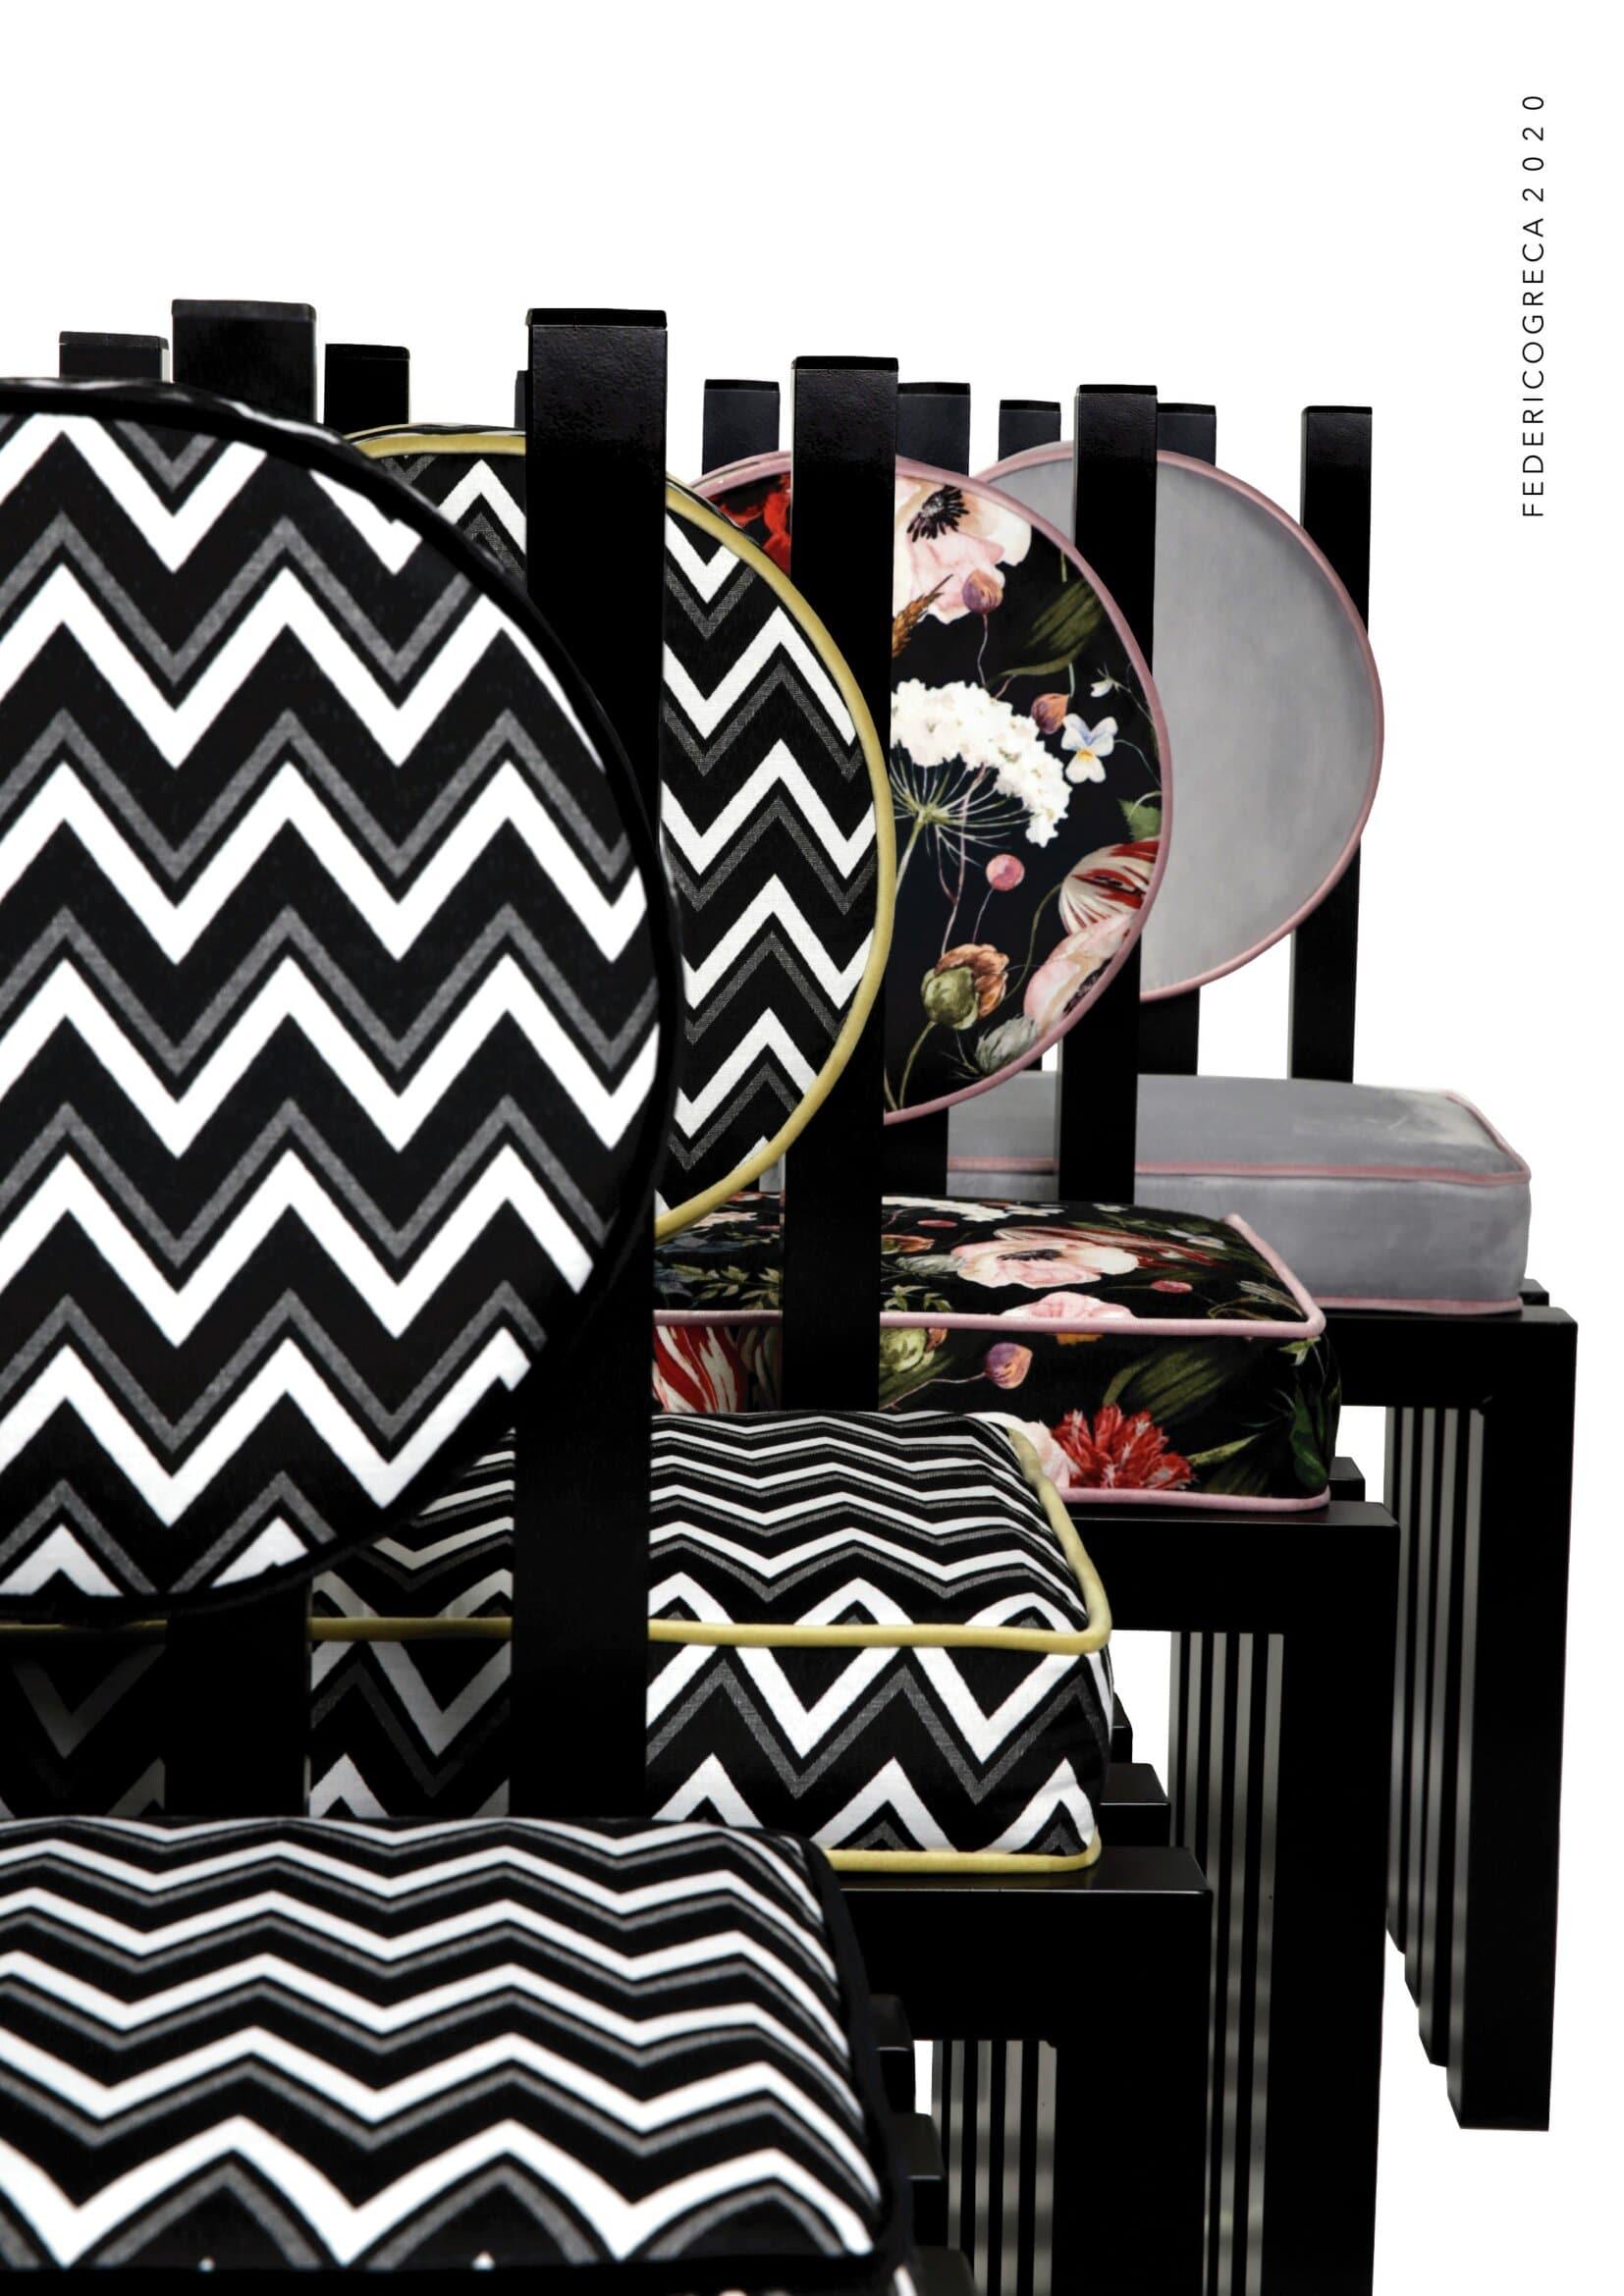 Aluminum Ennesima, contemporary chair by Studio Greca, Black Aluminium, Zigzag Fabric For Sale